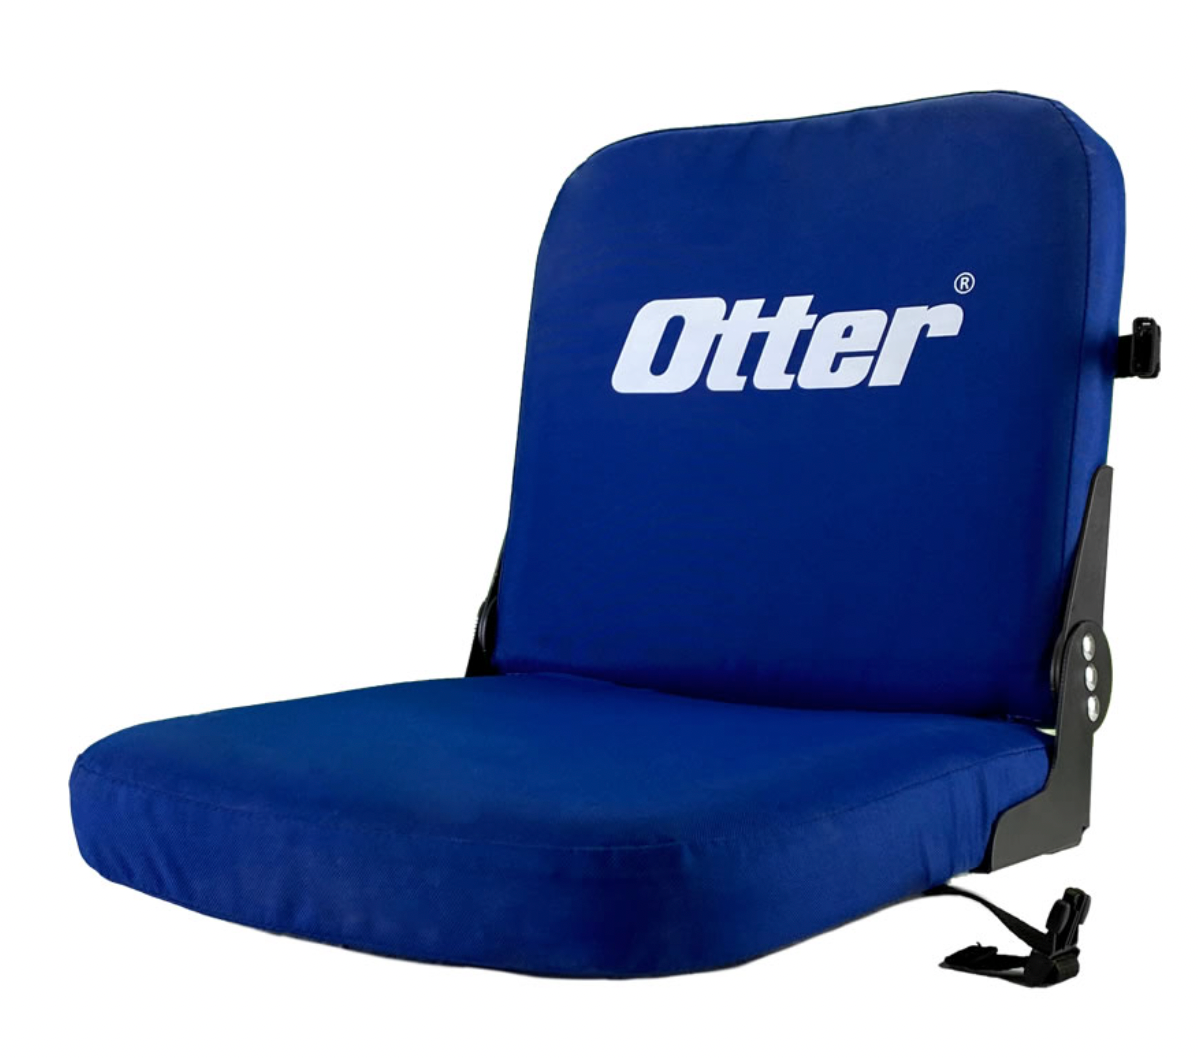 Otter Pro Jump Seat